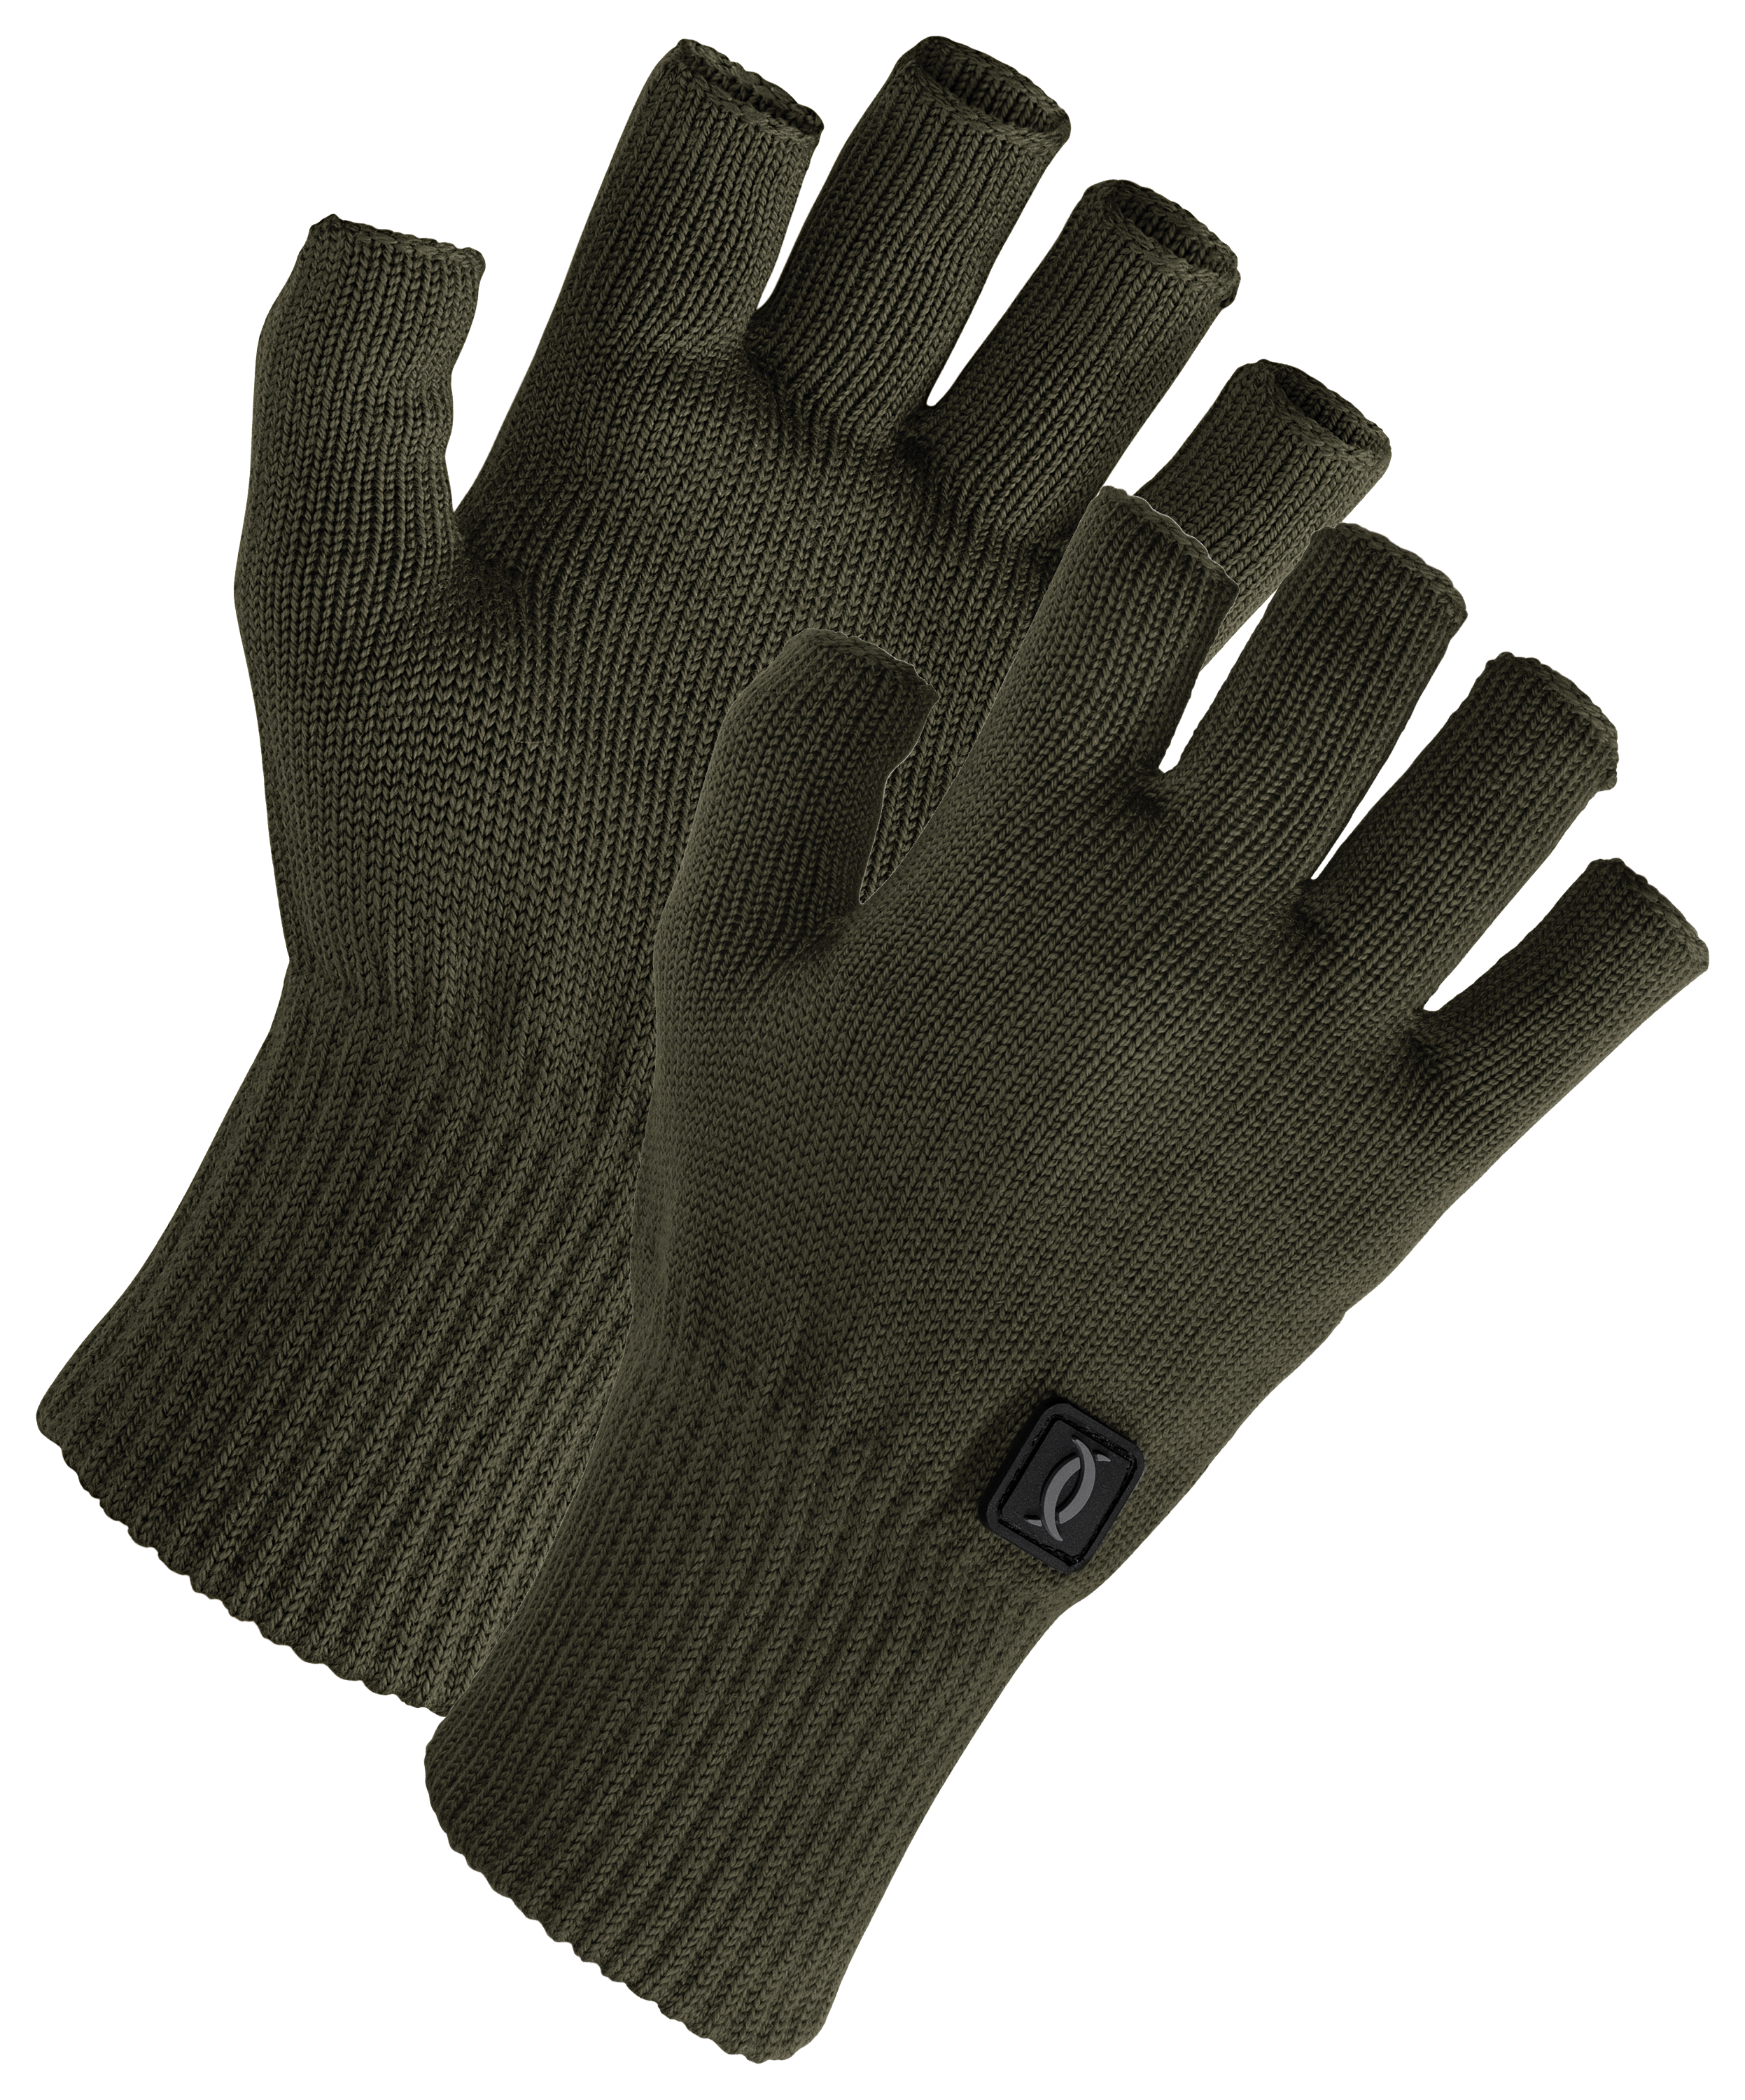 Cabela's Instinct Wool Fingerless Gloves for Men